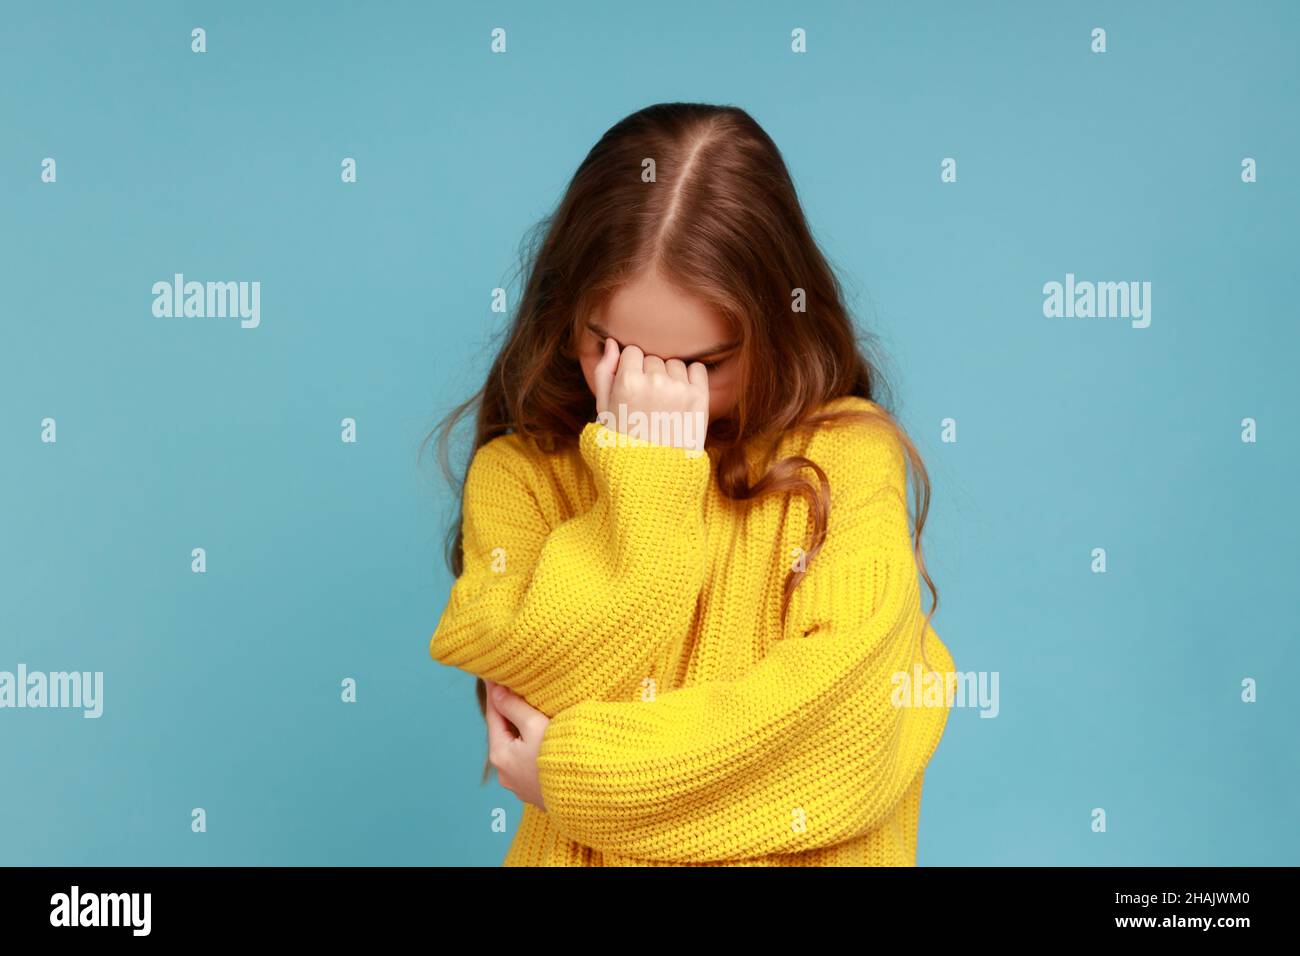 Porträt eines kleinen Mädchens versteckt Gesicht nach unten und weinen, aufgeregt über Verlust, Gefühl Trauer und Bedauern, tragen gelben lässigen Stil Pullover. Innenaufnahme des Studios isoliert auf blauem Hintergrund. Stockfoto